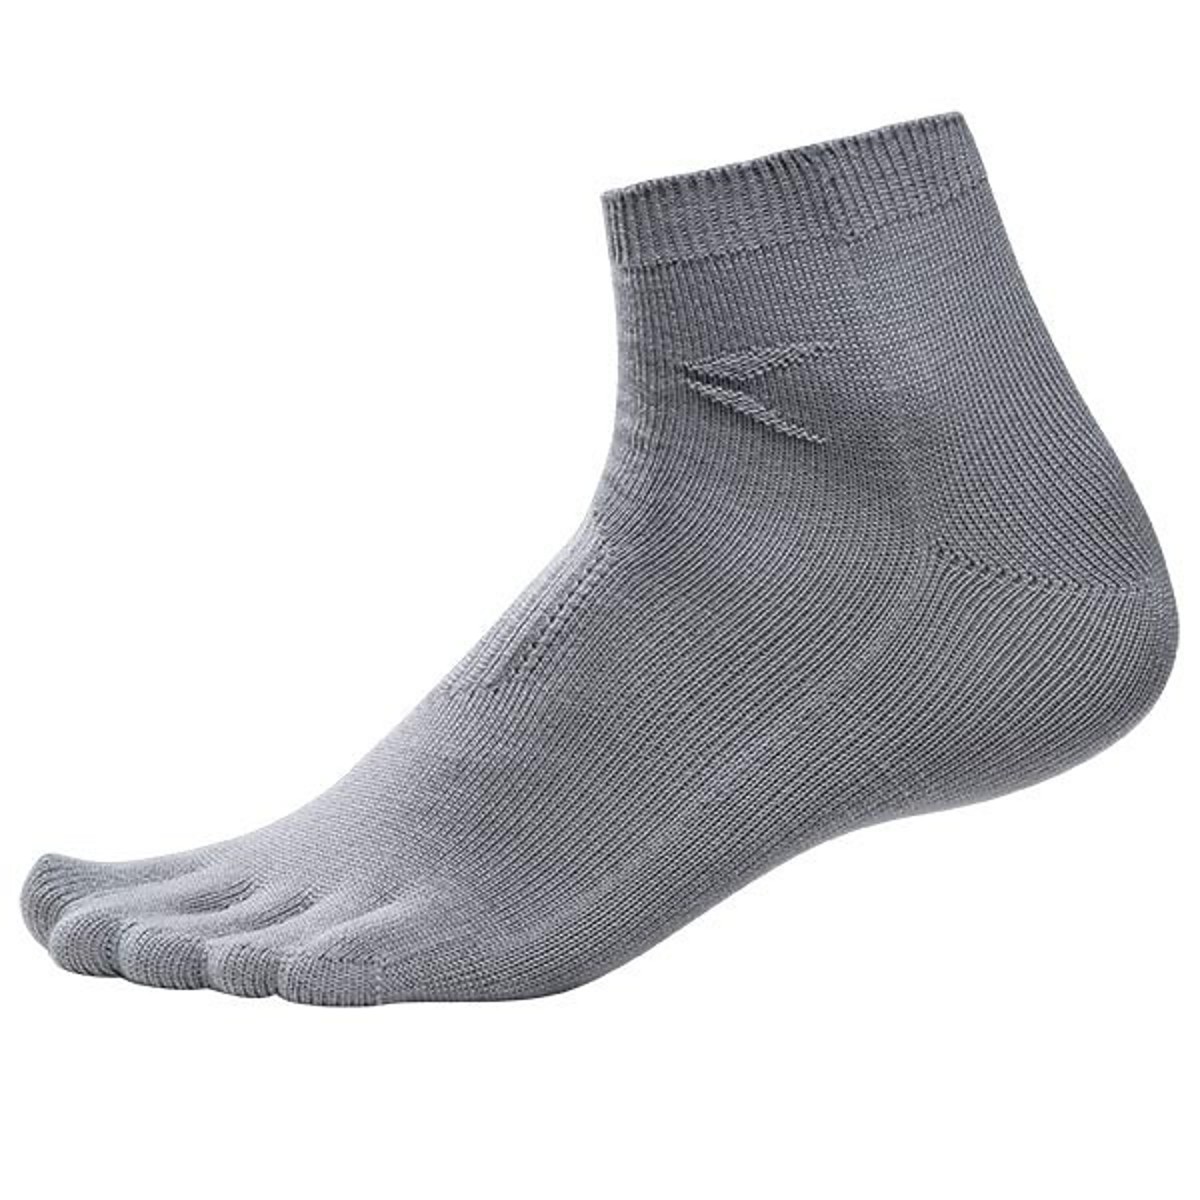 Pfanner Zehen-Taschen-Socken low - 1